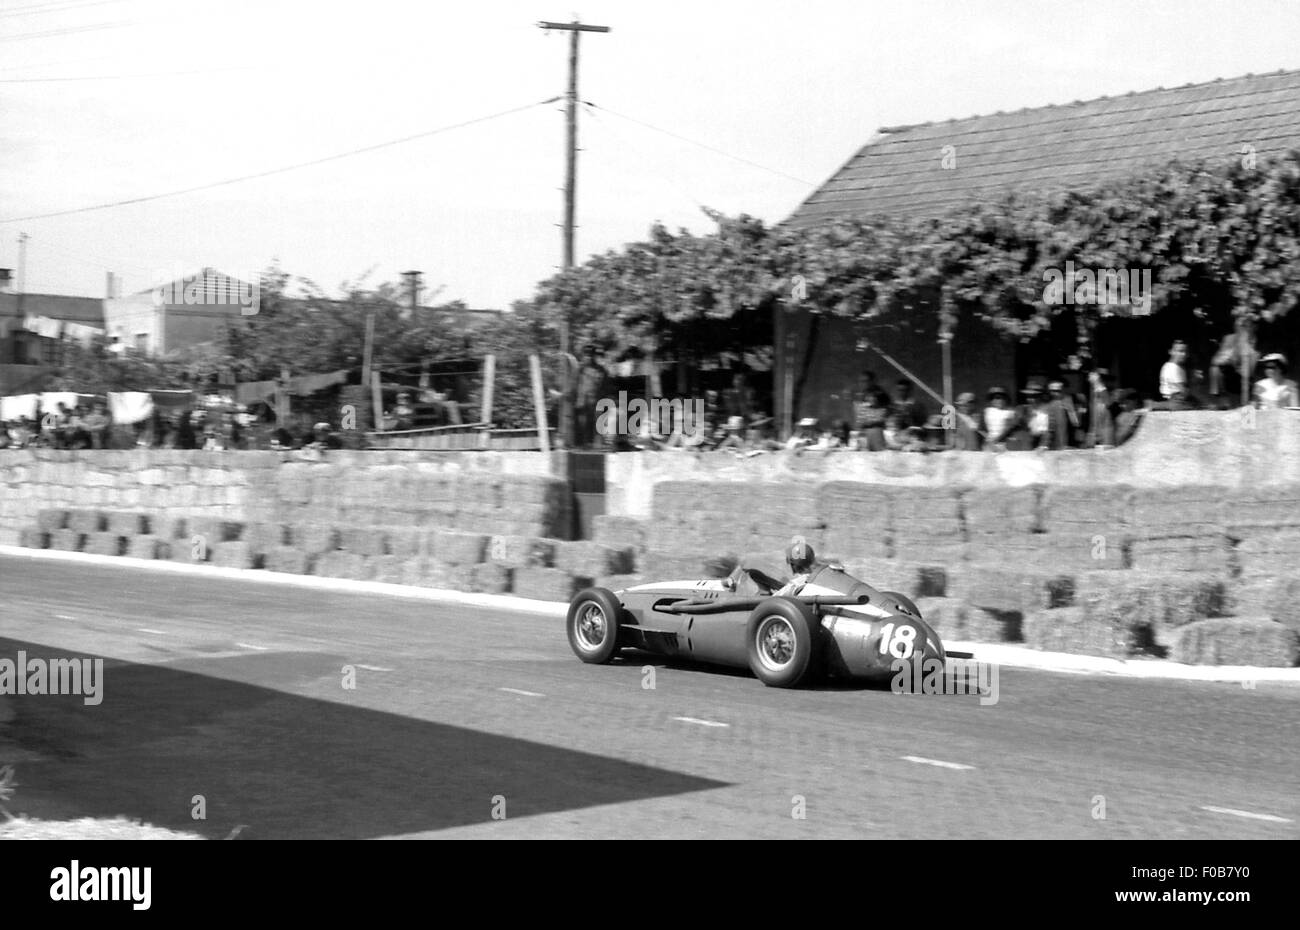 Portuguese GP in Oporto 1958 Stock Photo